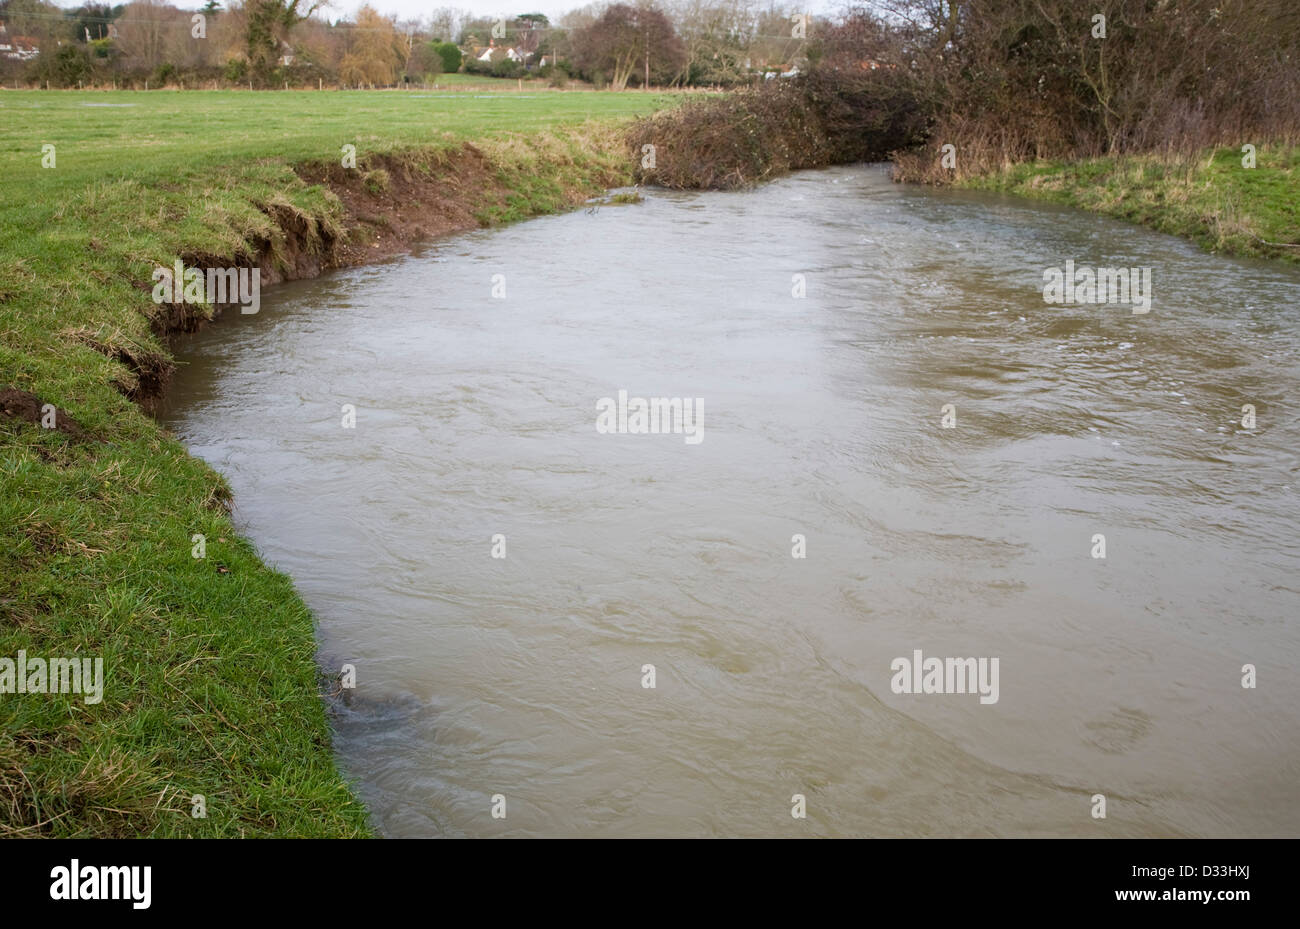 Nivel alto de agua y velocidad de subcotización bancos fluviales sobre el río deben, Ufford, Suffolk, Inglaterra Foto de stock